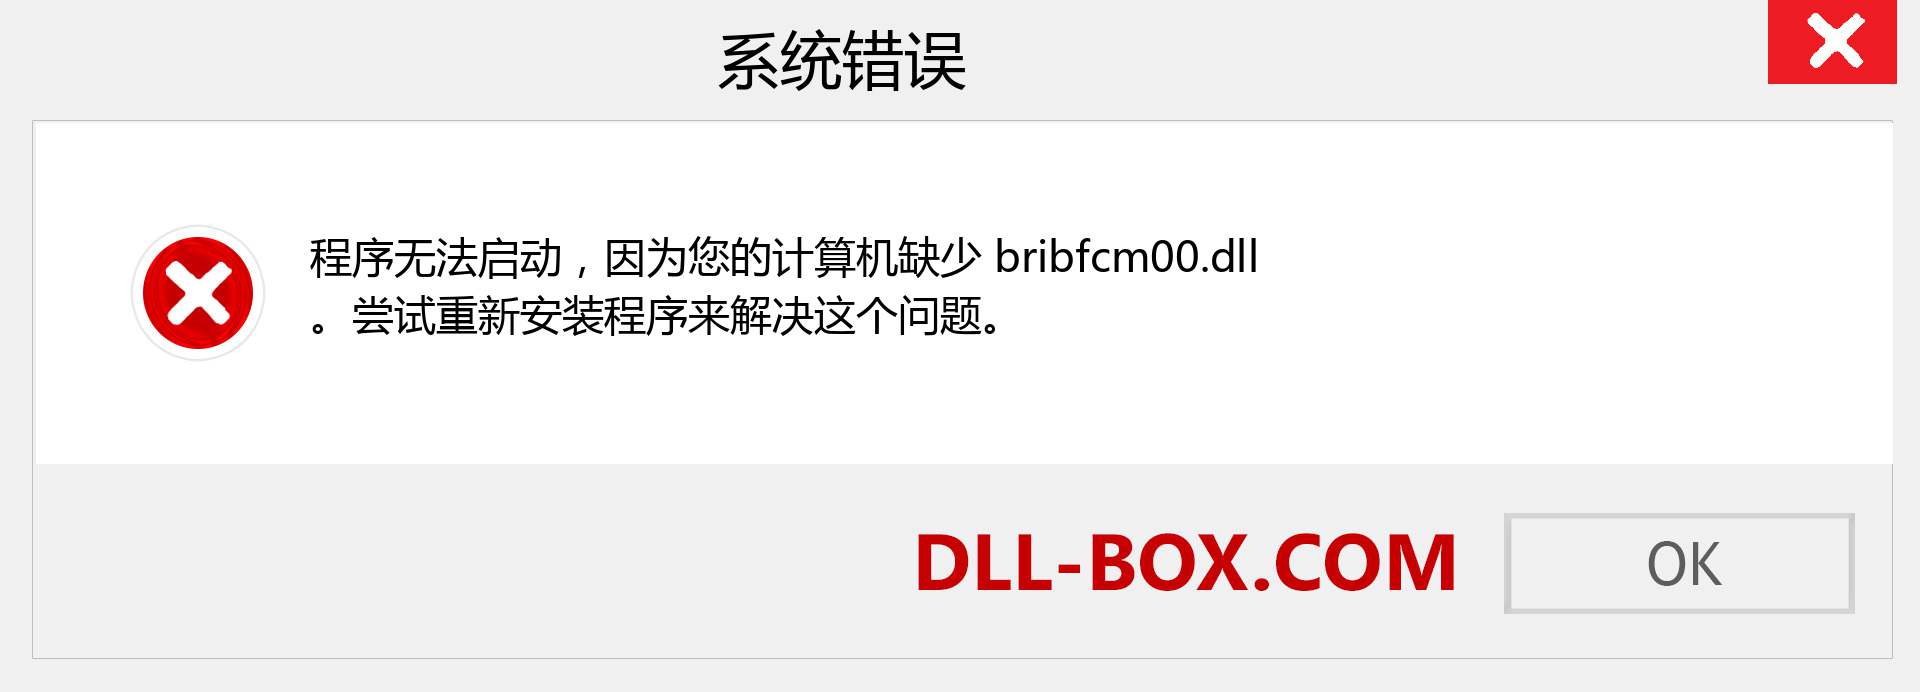 bribfcm00.dll 文件丢失？。 适用于 Windows 7、8、10 的下载 - 修复 Windows、照片、图像上的 bribfcm00 dll 丢失错误